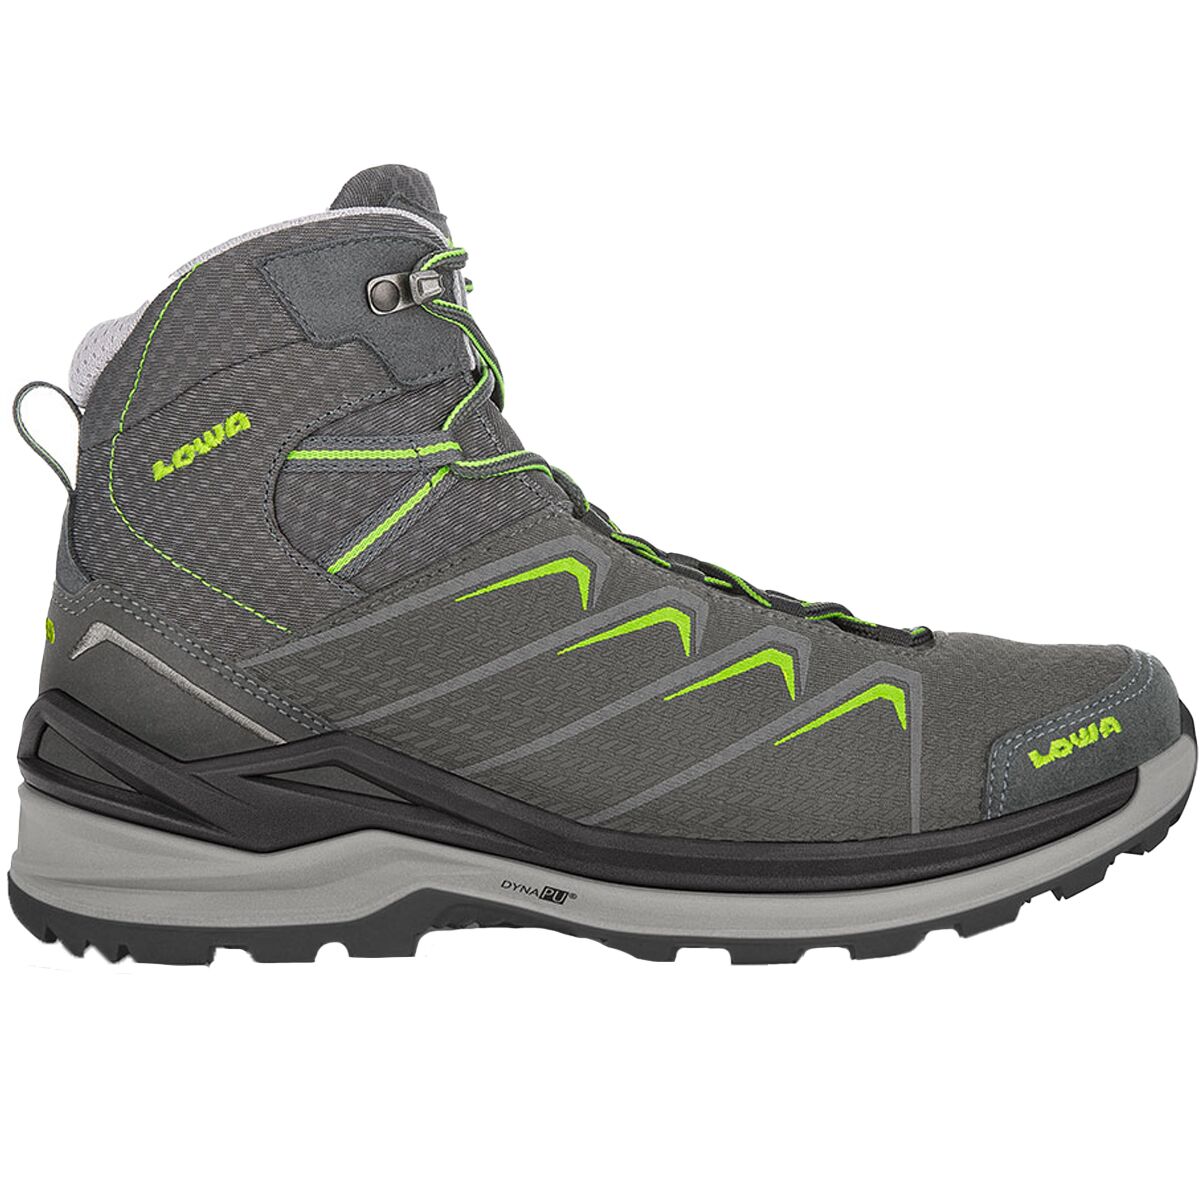 Lowa Ferrox Pro GTX Mid Hiking Boot - Men's